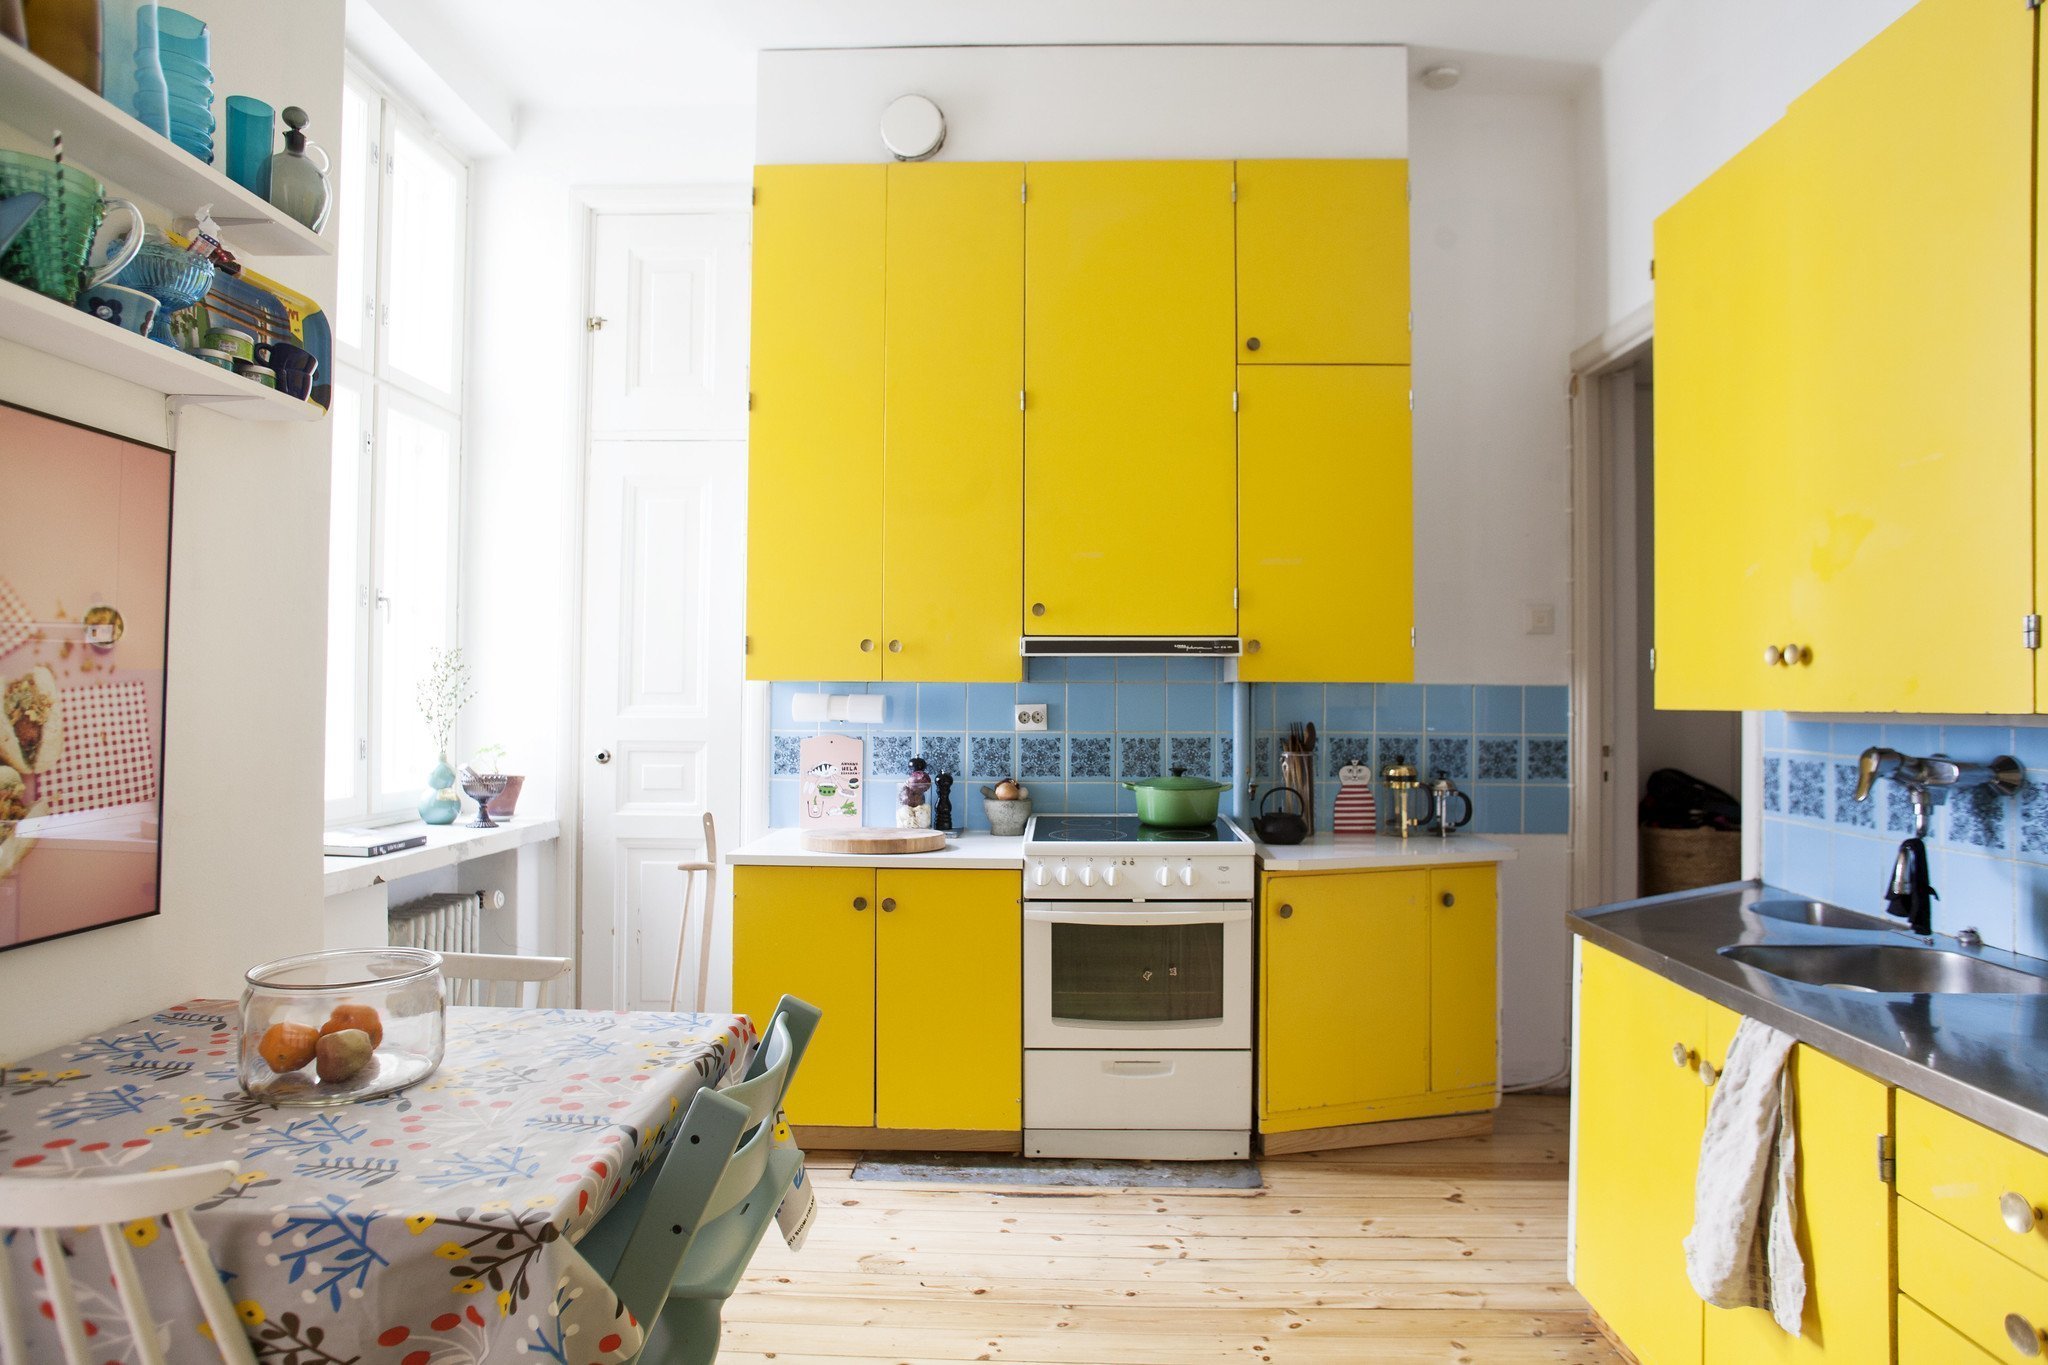 Бело желтая кухня. Лимонная кухня. Кухня лимонного цвета. Желтая кухня в интерьере.